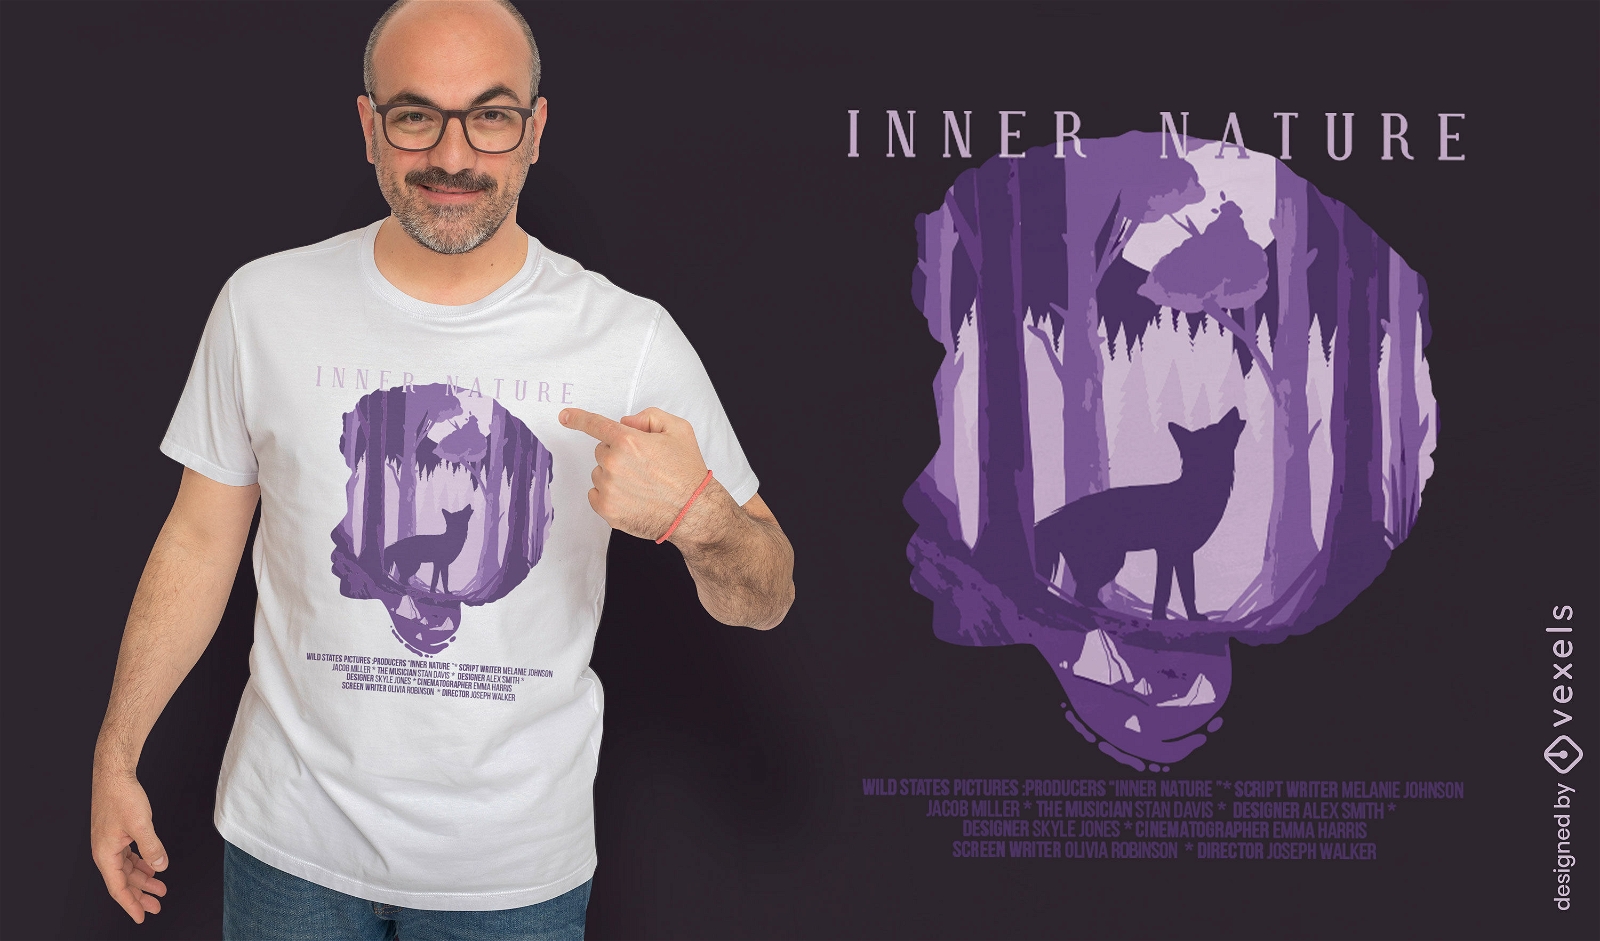 Diseño de camiseta de película de hombre lobo de naturaleza interna